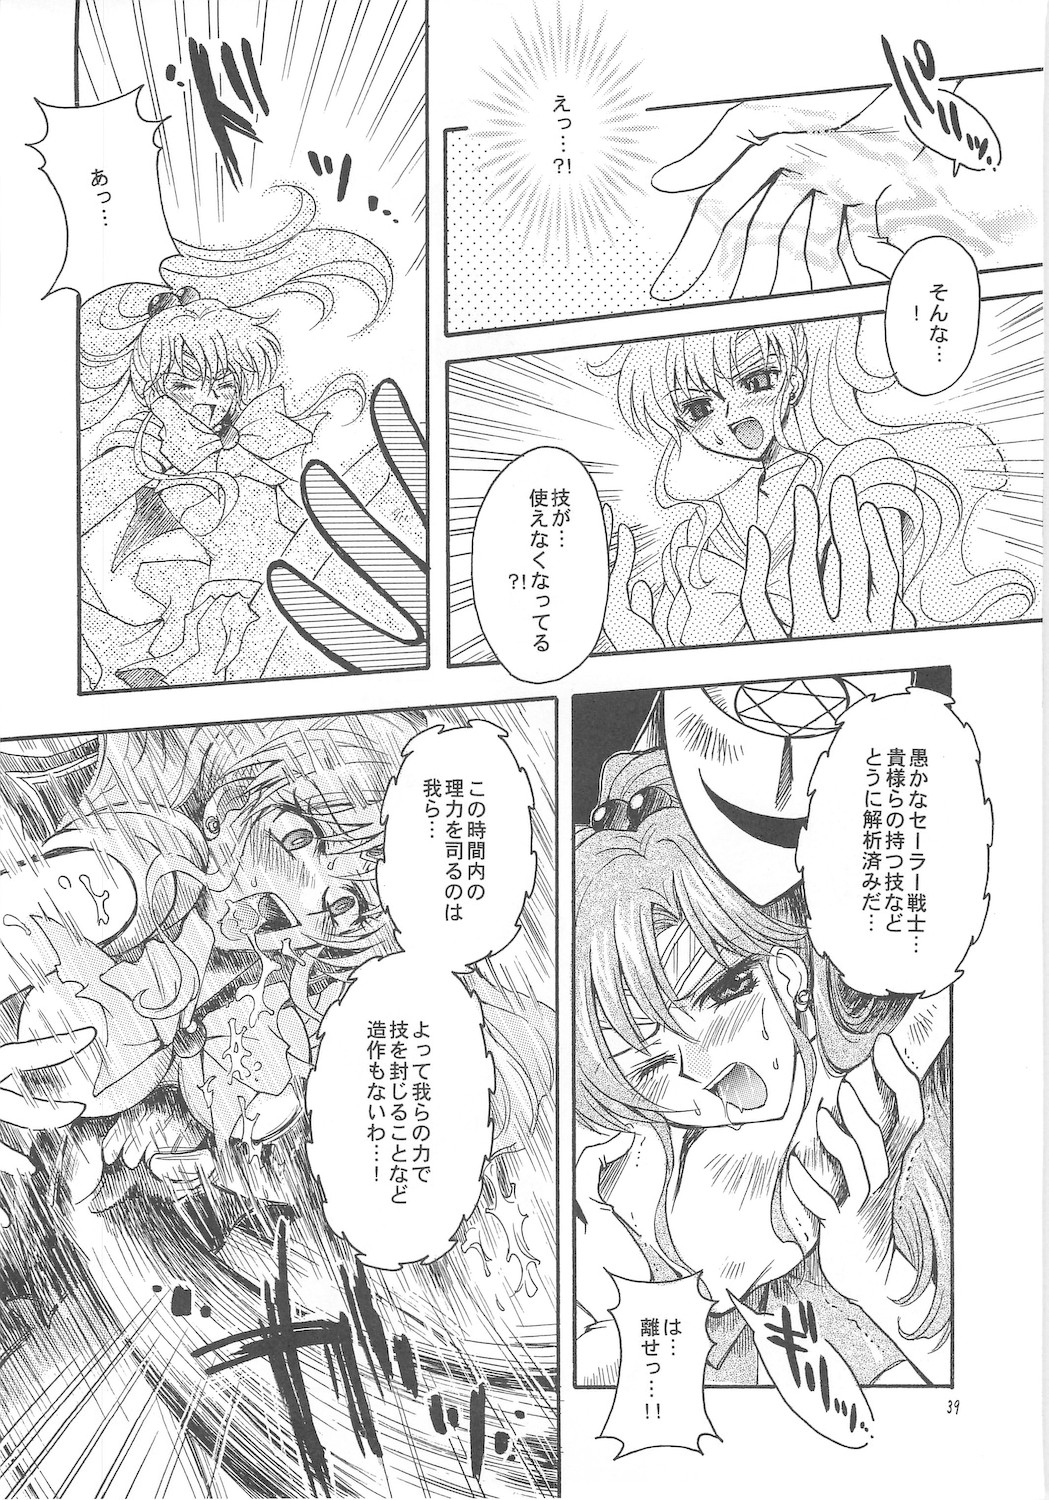 [Kotori Jimusho]  Owaru Sekai dai 1 shou dai 2 shou (Sailor Moon) 